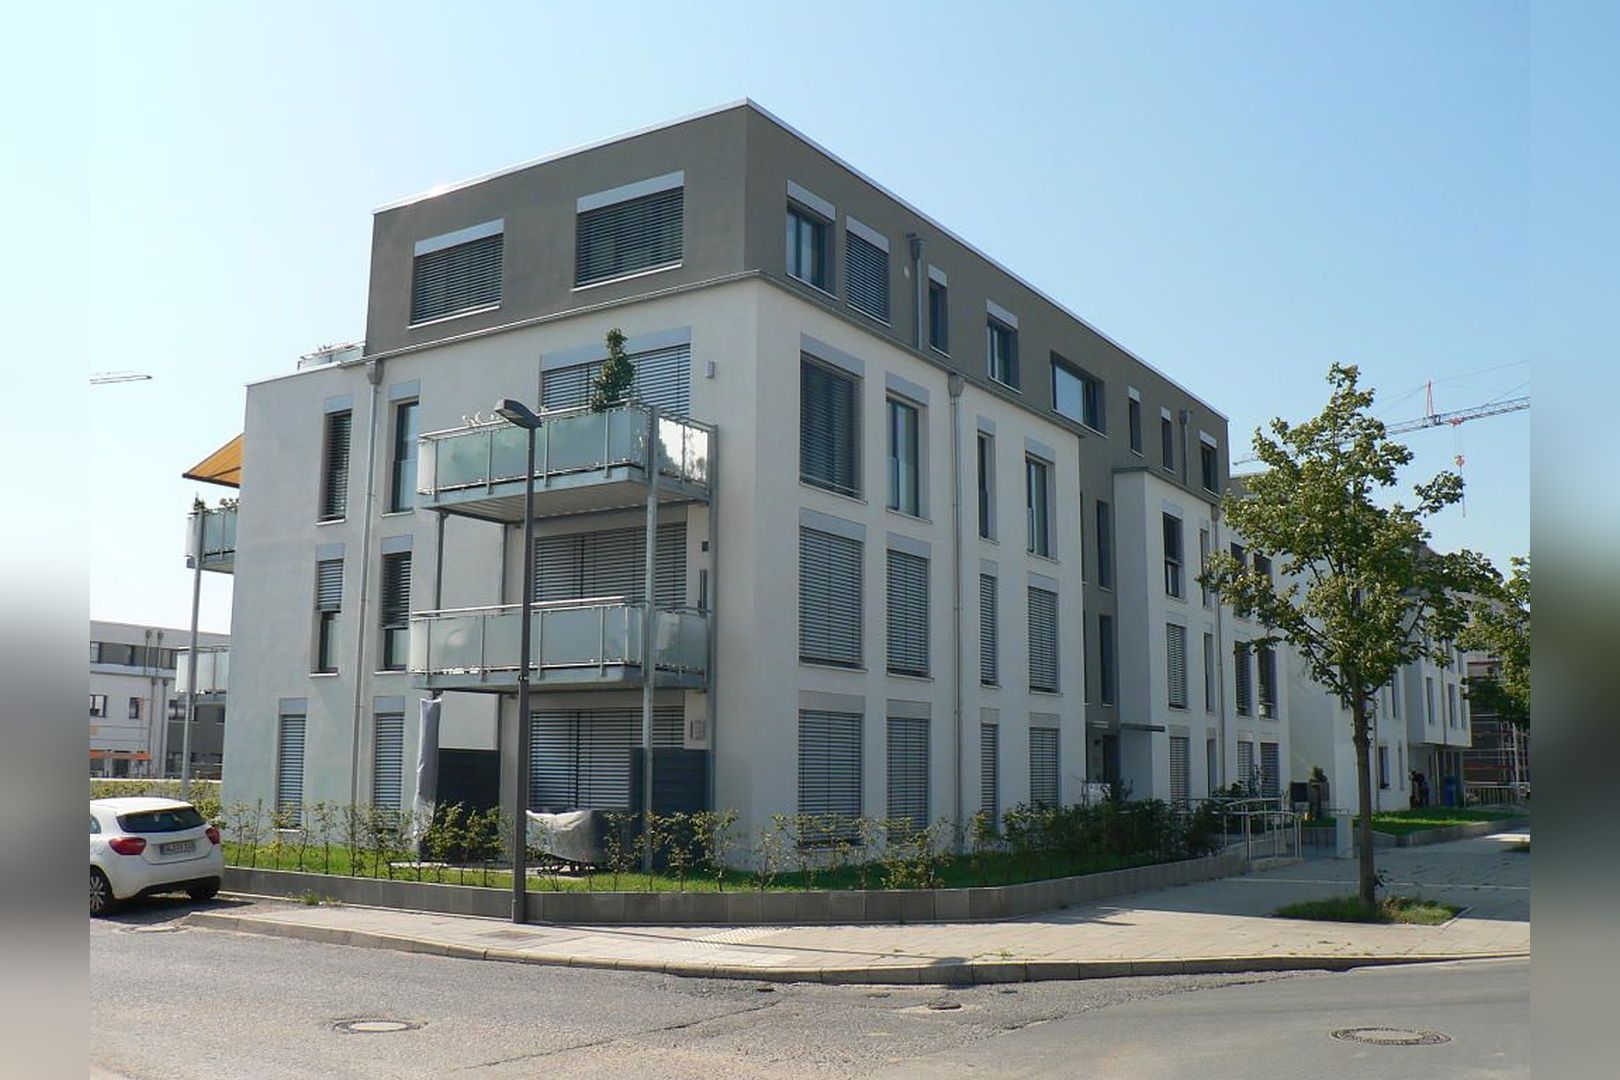 Immobilie Nr.Köln 004.1 - 4-Zimmer-EG-Wohnung mit Terrasse, Garten und TG-Stellplatz - Bild 11.jpg